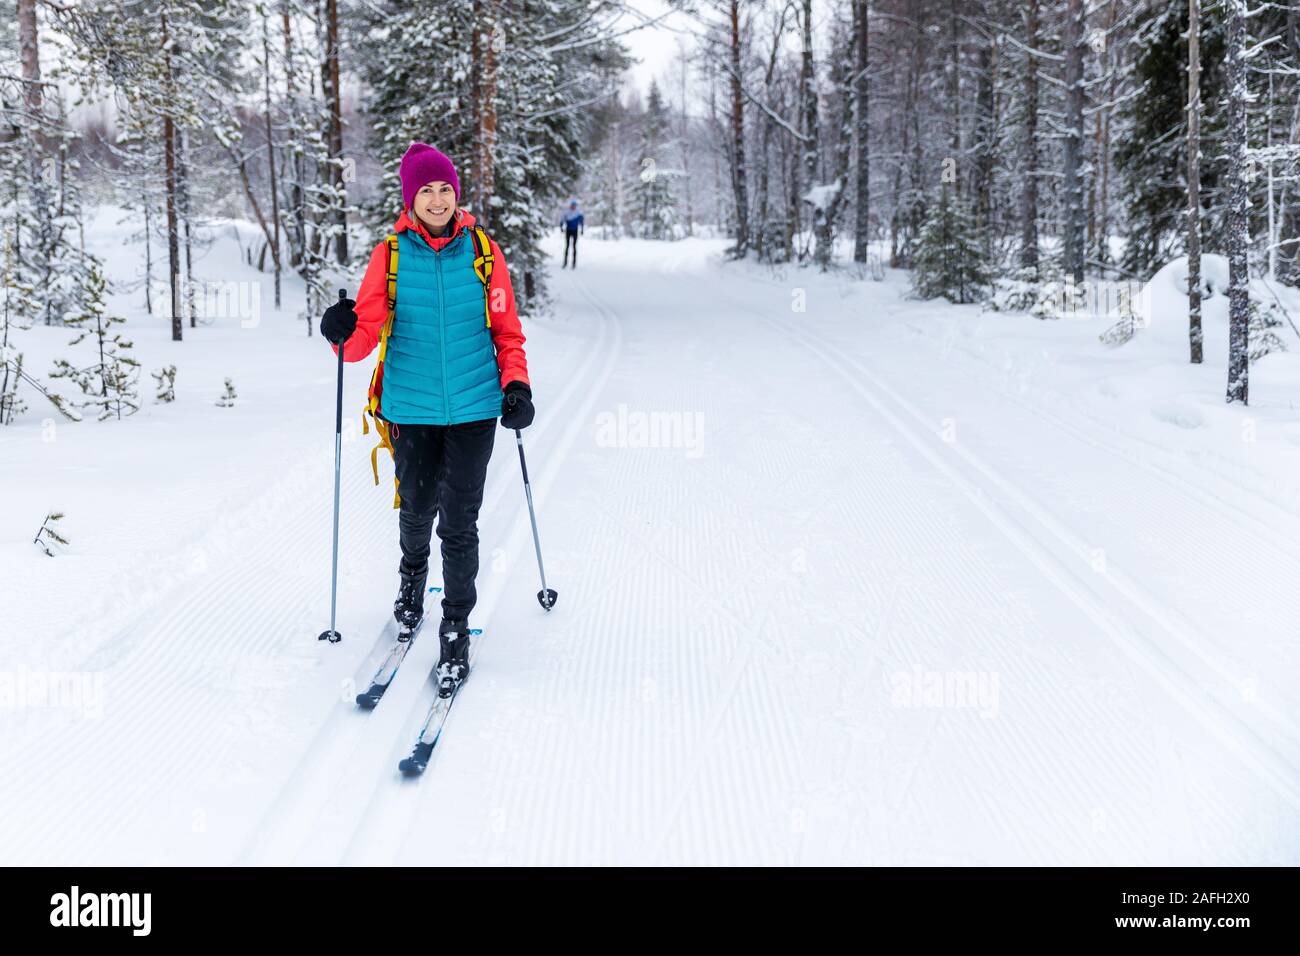 Ski de fond - Femme avec skis sur la forêt enneigée piste de ski. Akaslompolo, Finlande Banque D'Images